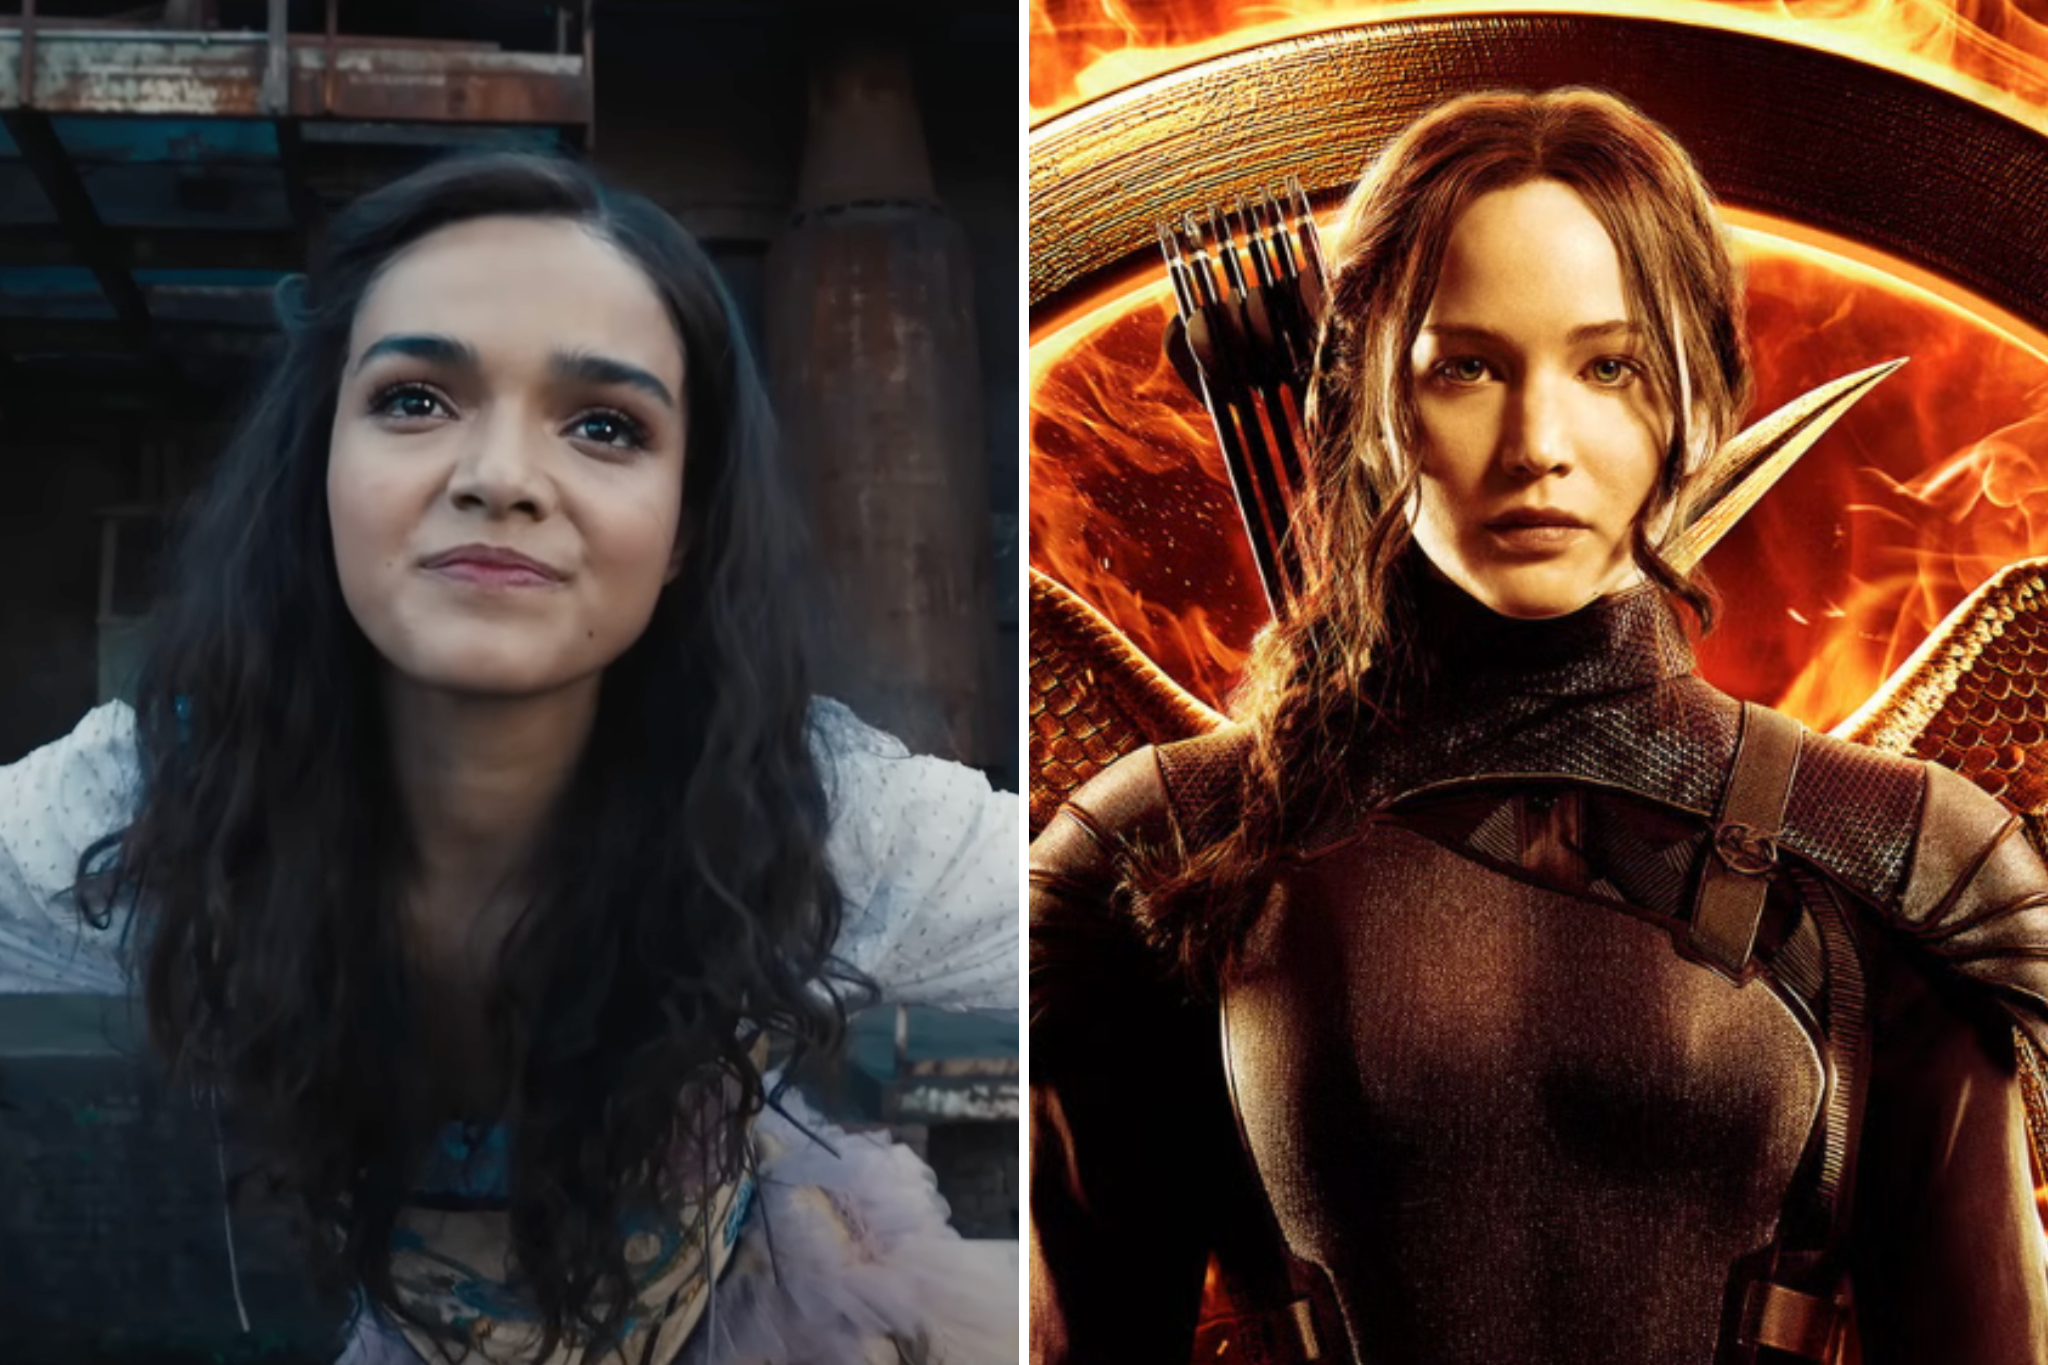 WATCH: 'Hunger Games' Prequel Trailer Gives Us a Rachel Zegler We've Never  Seen Before